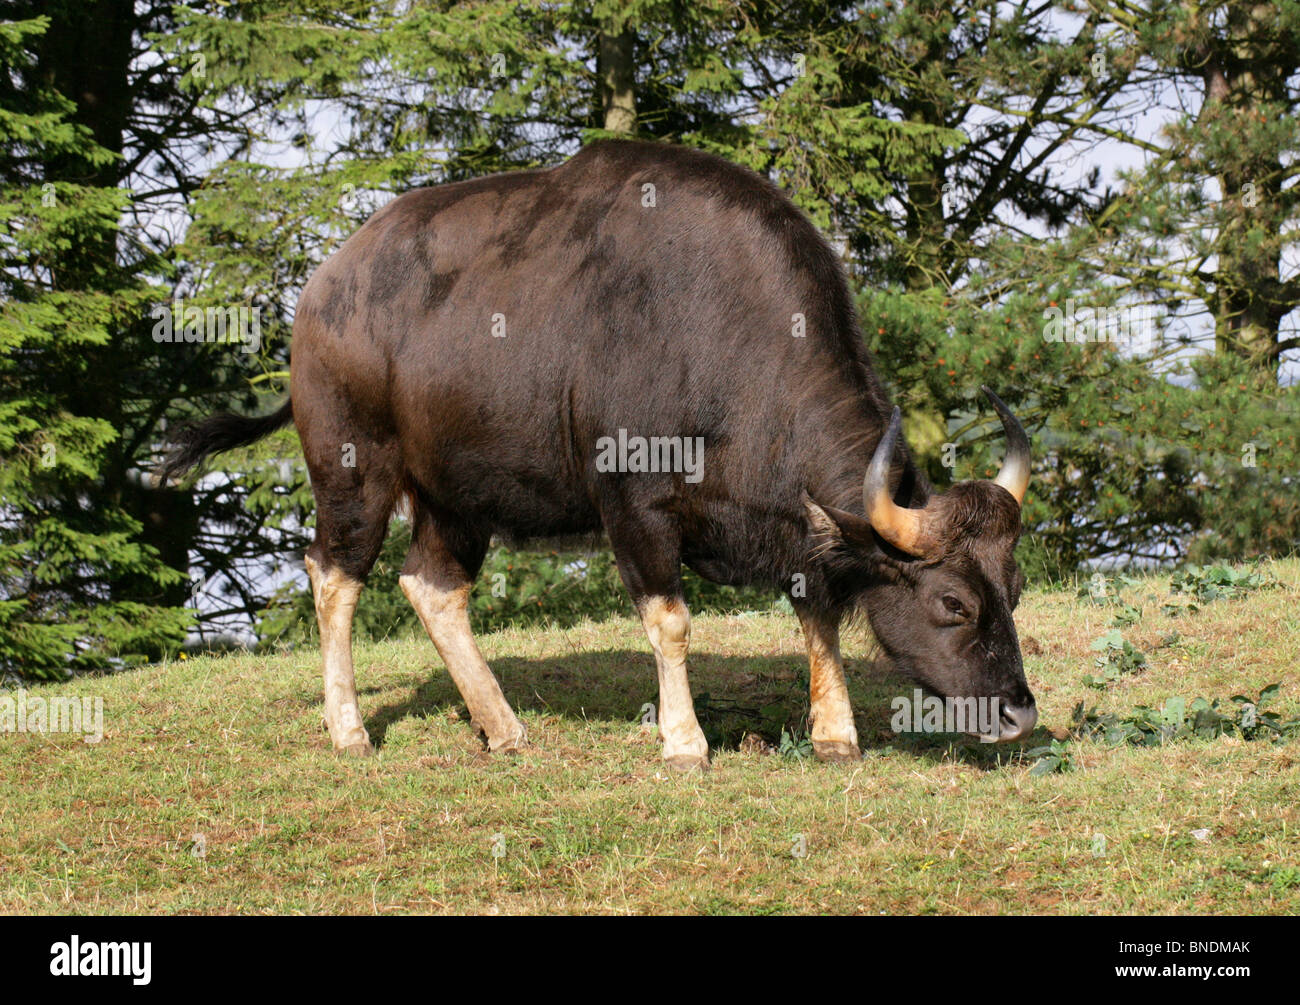 Weibliche Gaur oder indische Bison, Bos Gaurus (zuvor Bibos Gauris), Bovinae, Horntiere. Große asiatische Rinder. Stockfoto